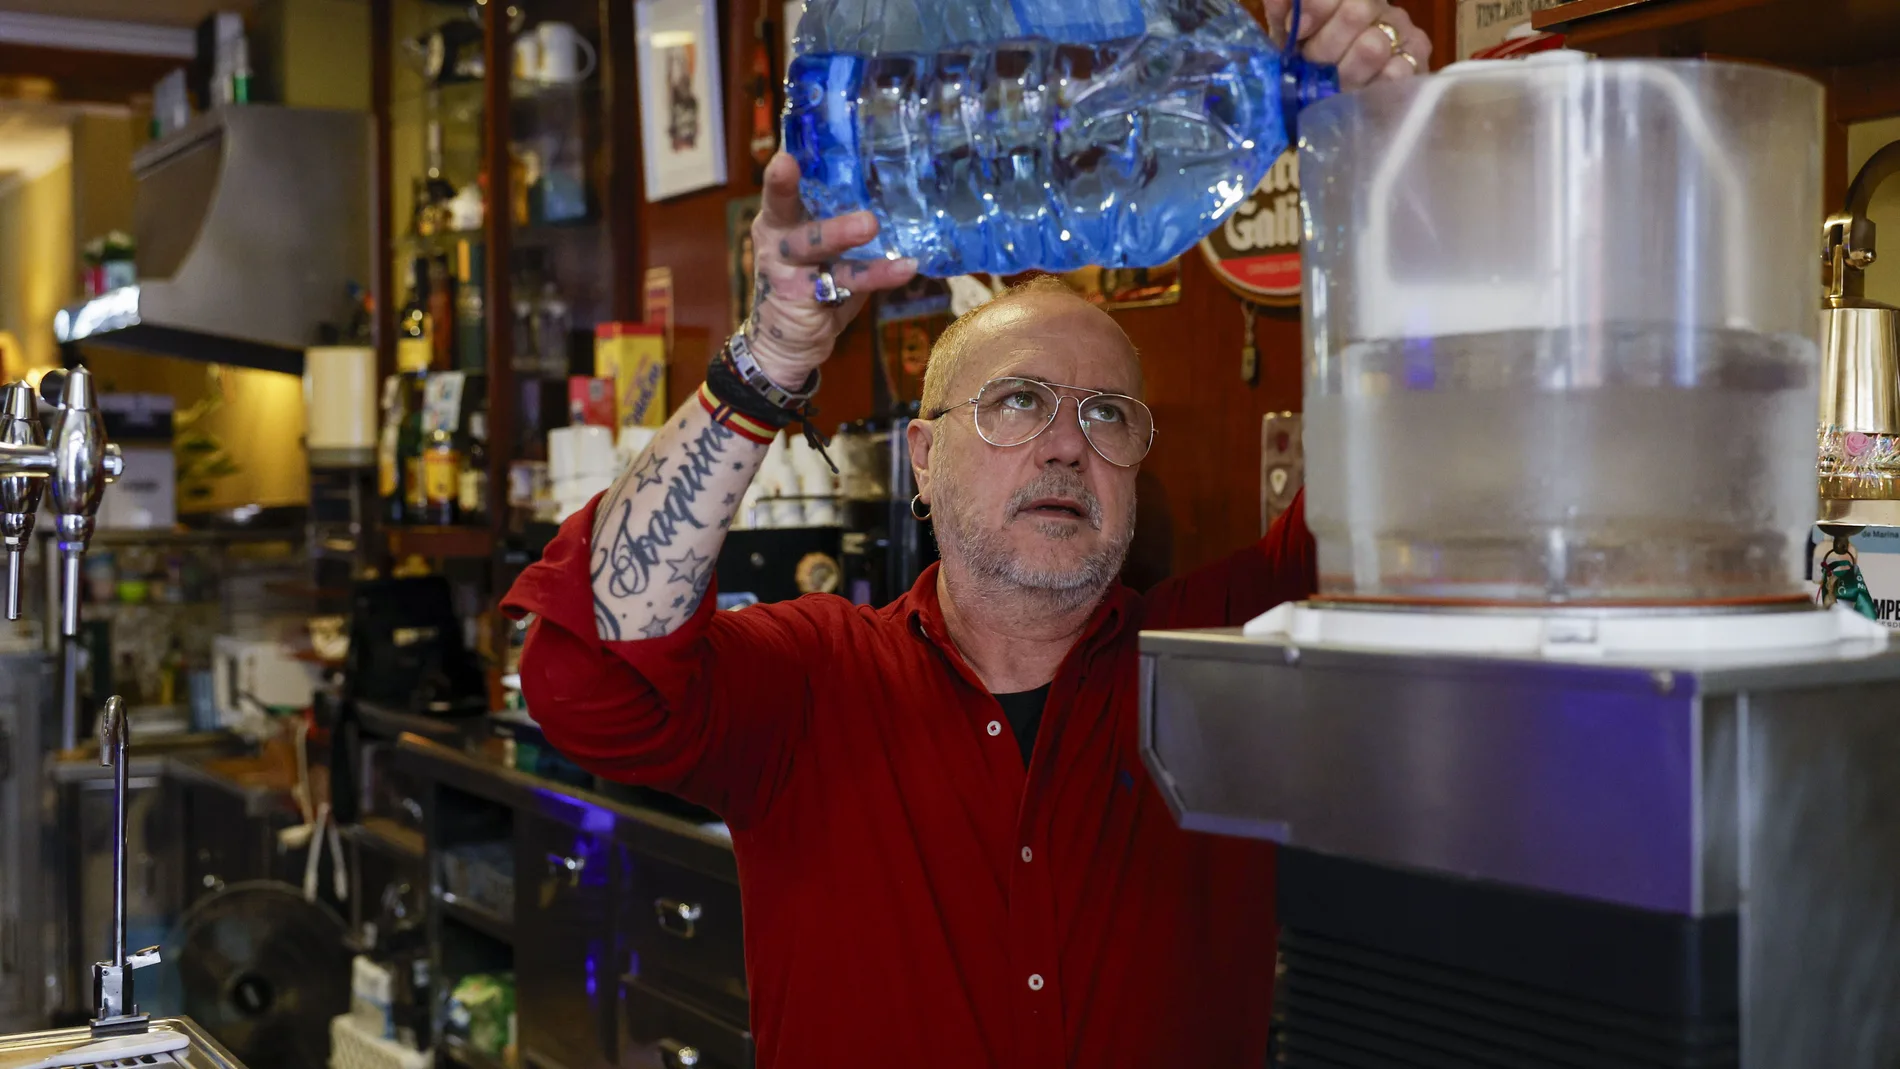 Palma de Gandia pide también "solidaridad" tras cuatro meses bebiendo agua de garrafas